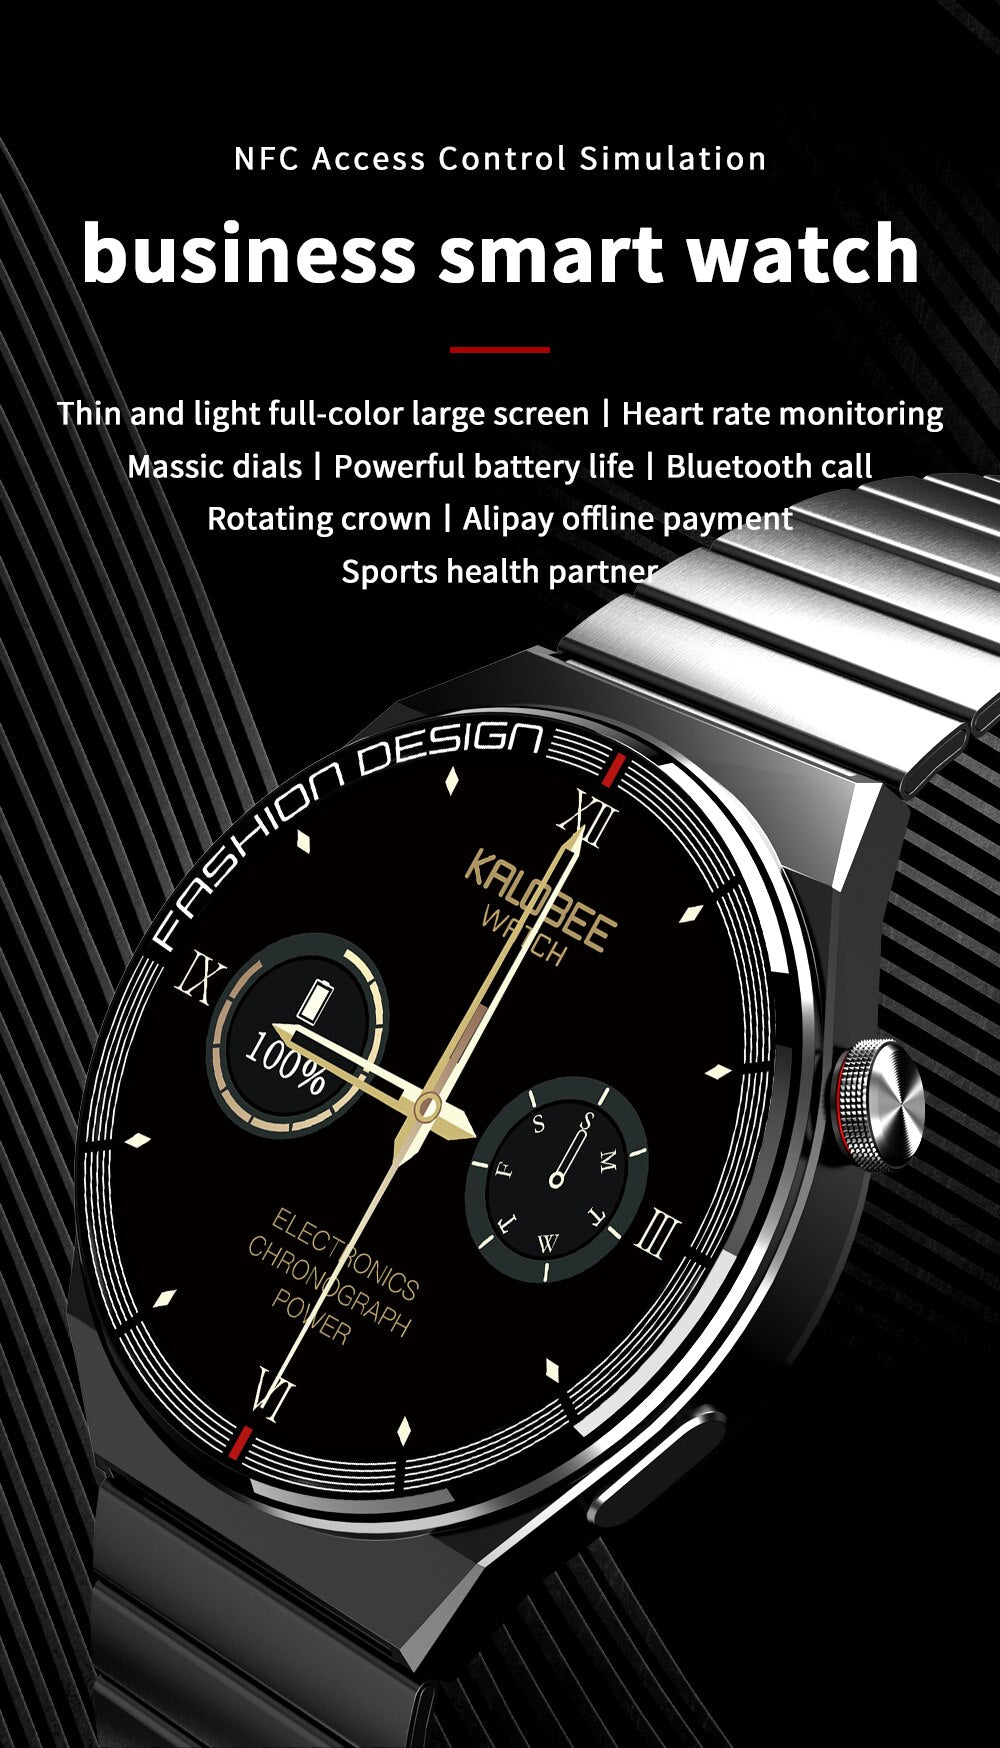 Smart Watch SK11 Plus